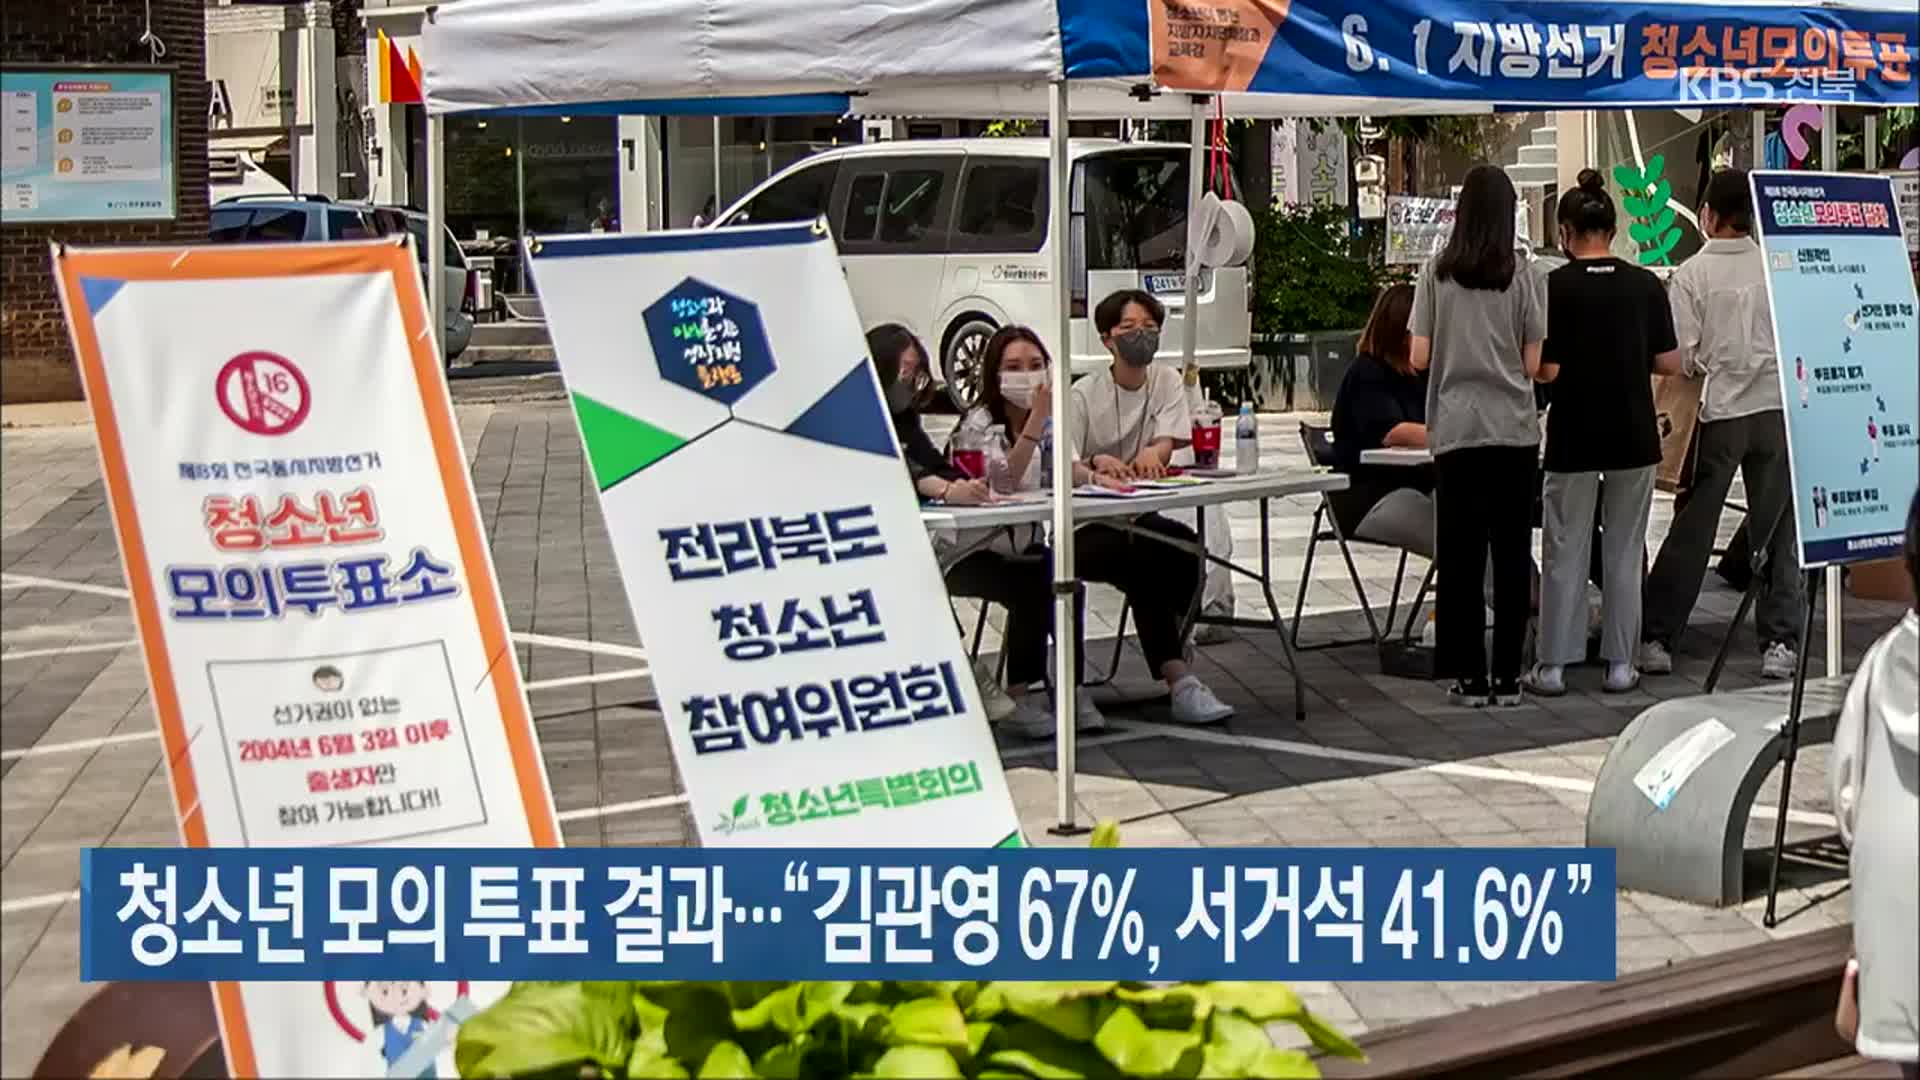 청소년 모의 투표 결과…“김관영 67%, 서거석 41.6%”